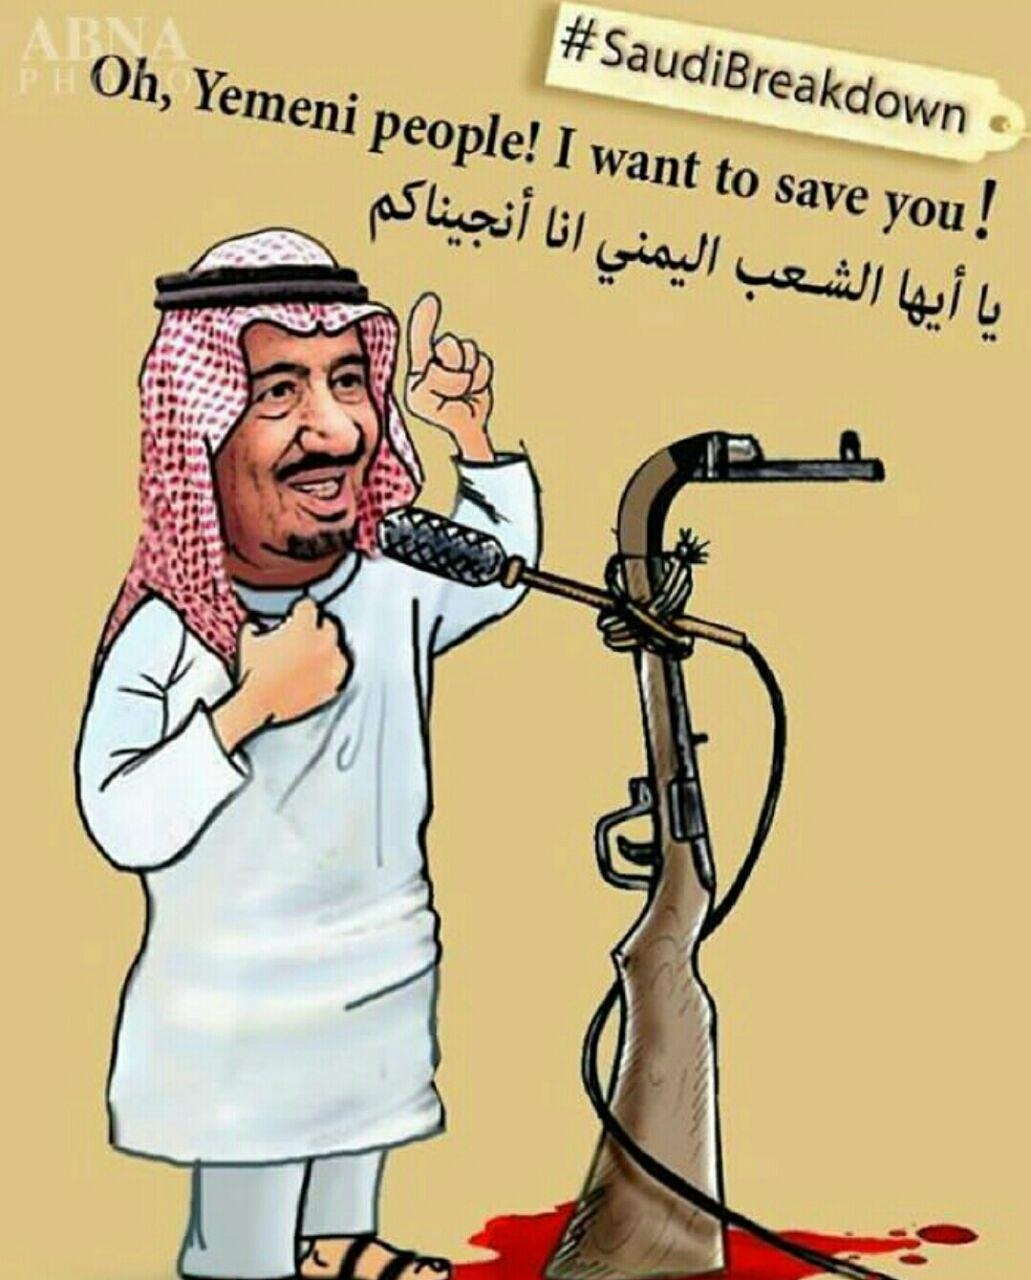 پرچم عربستان پس از اجرای 2030 چه تغییری می کند؟+کاریکاتور